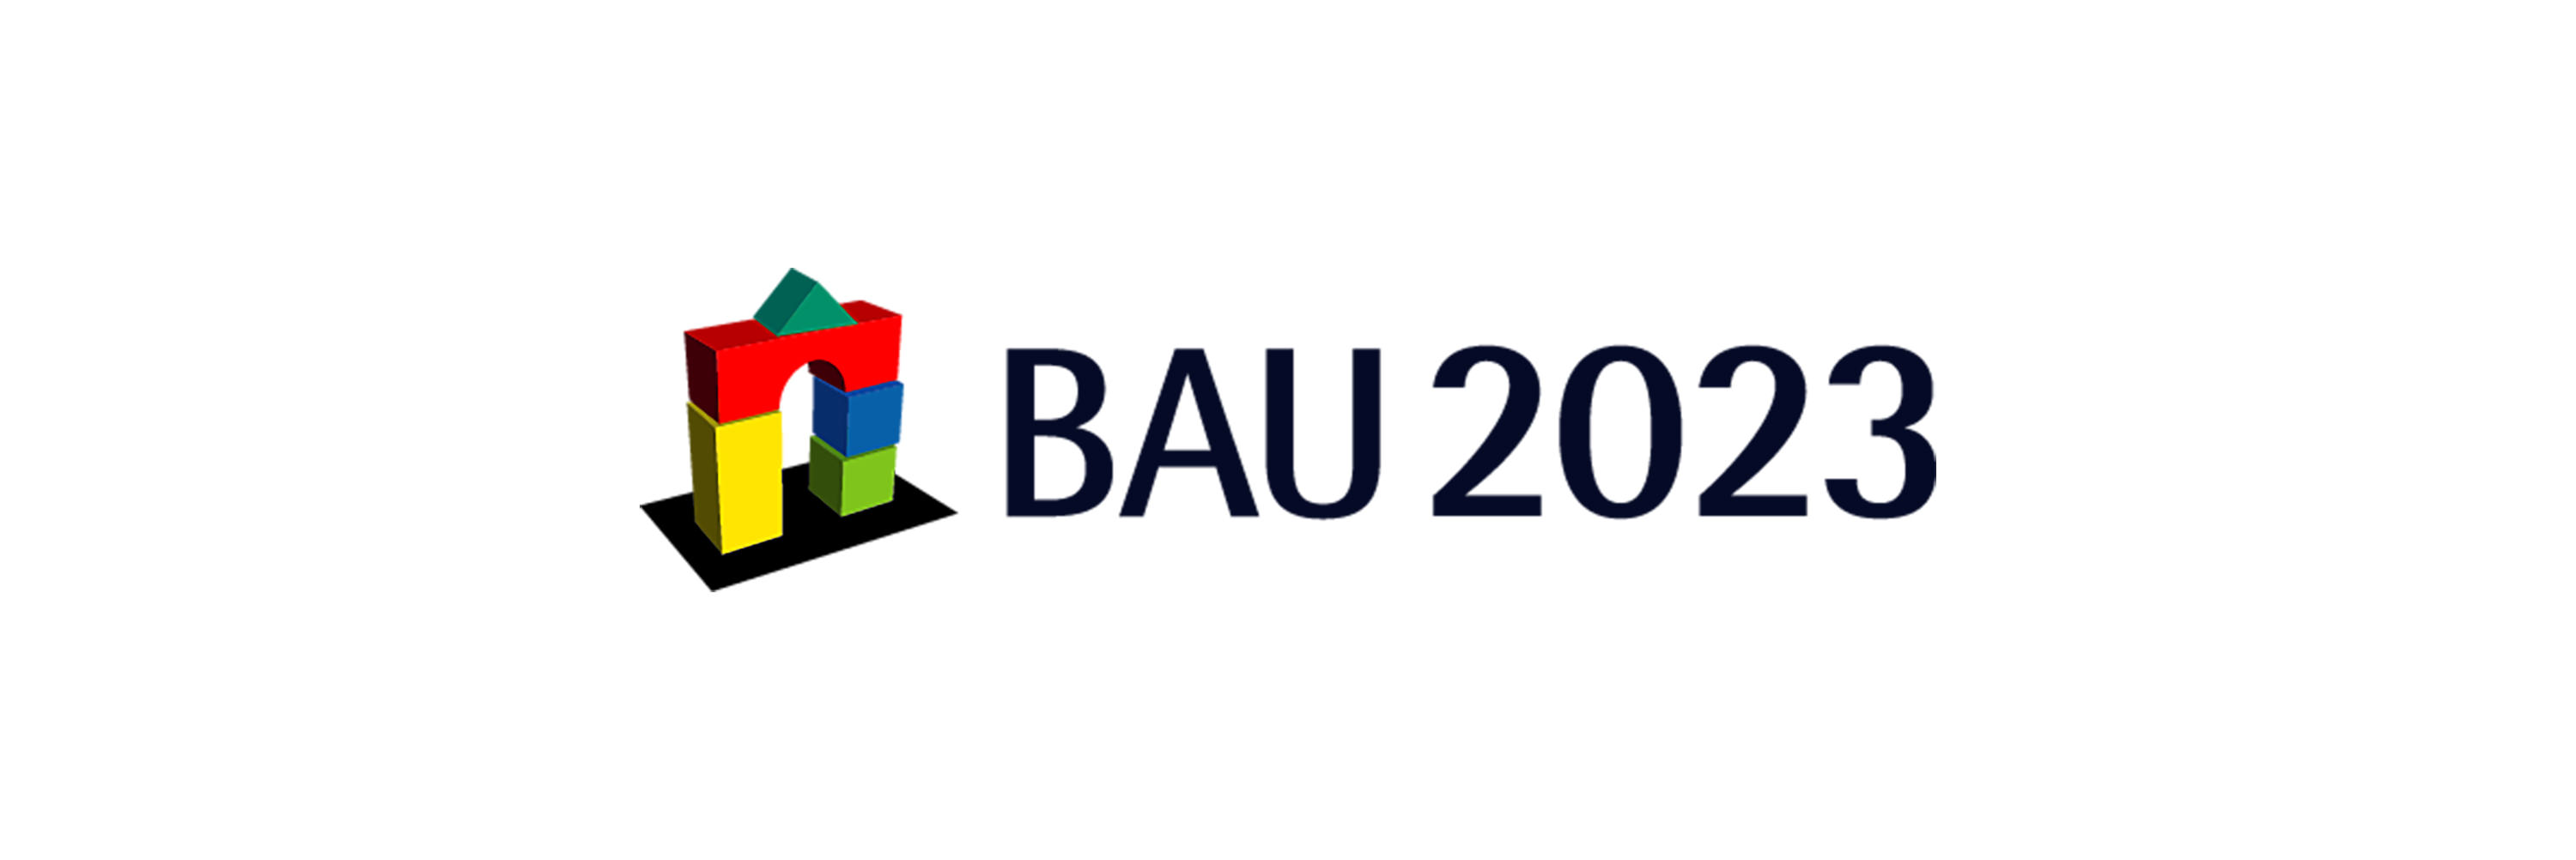 BAU 2023 München - Jansen AG